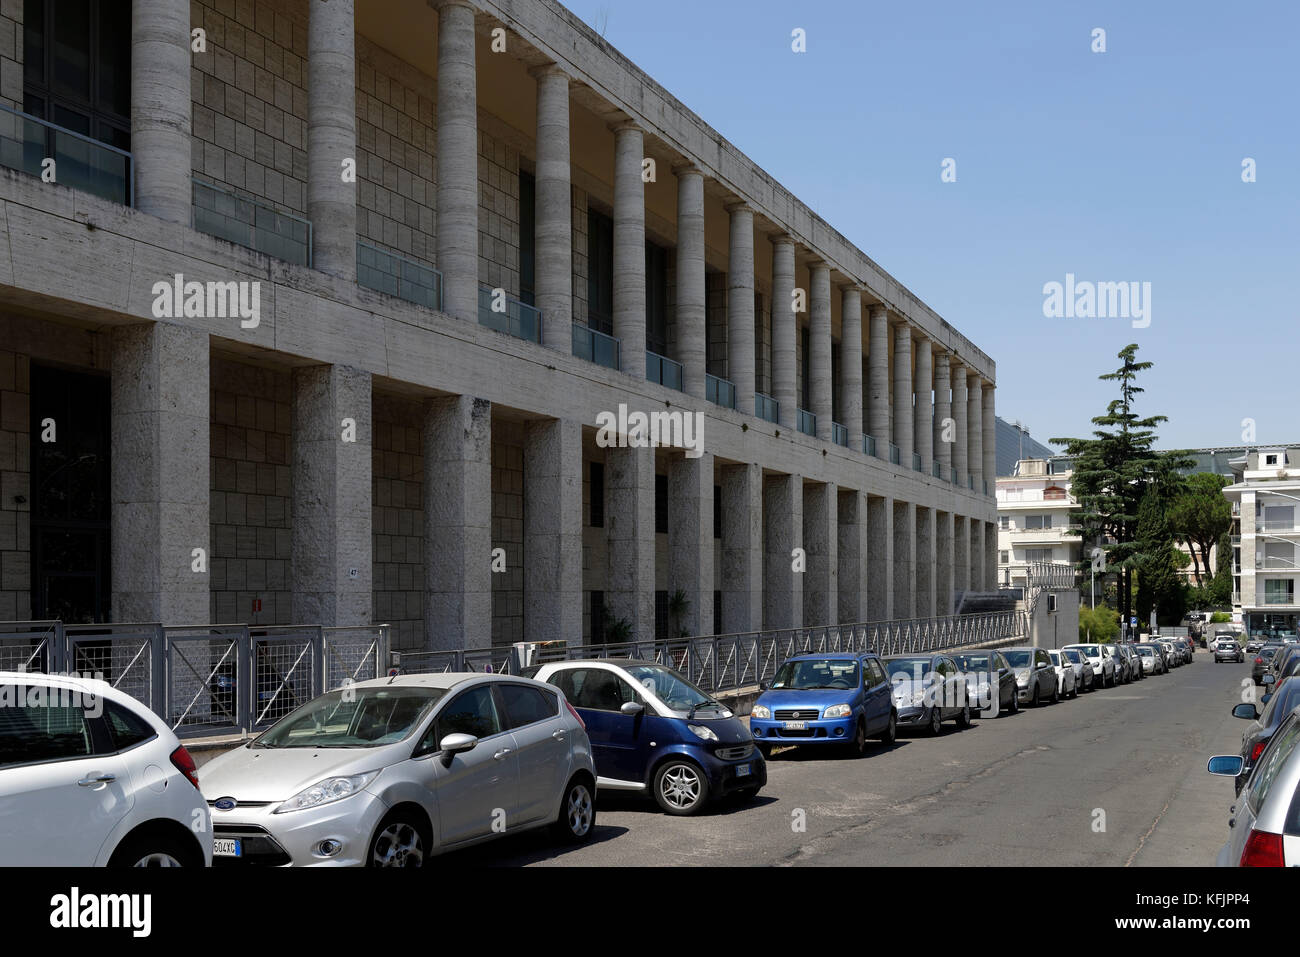 Sección del edificio monumental que alberga los archivos centrales del Estado (Archivio centrale dello Stato), EUR, Roma, Italia. Foto de stock